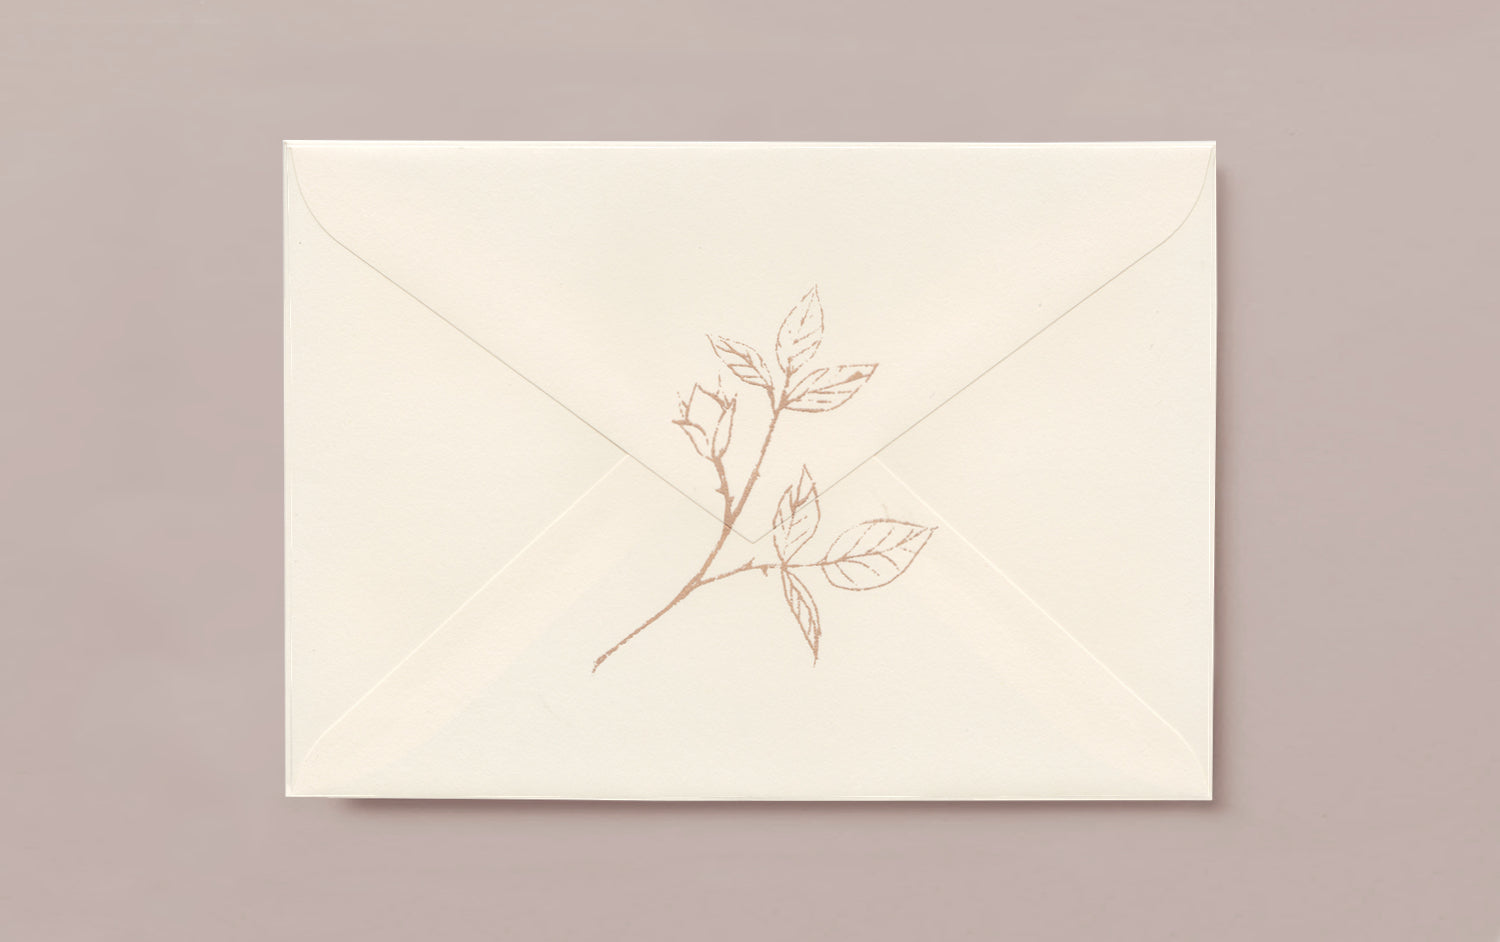 Silk Screen Printed Greeting Card, Rose